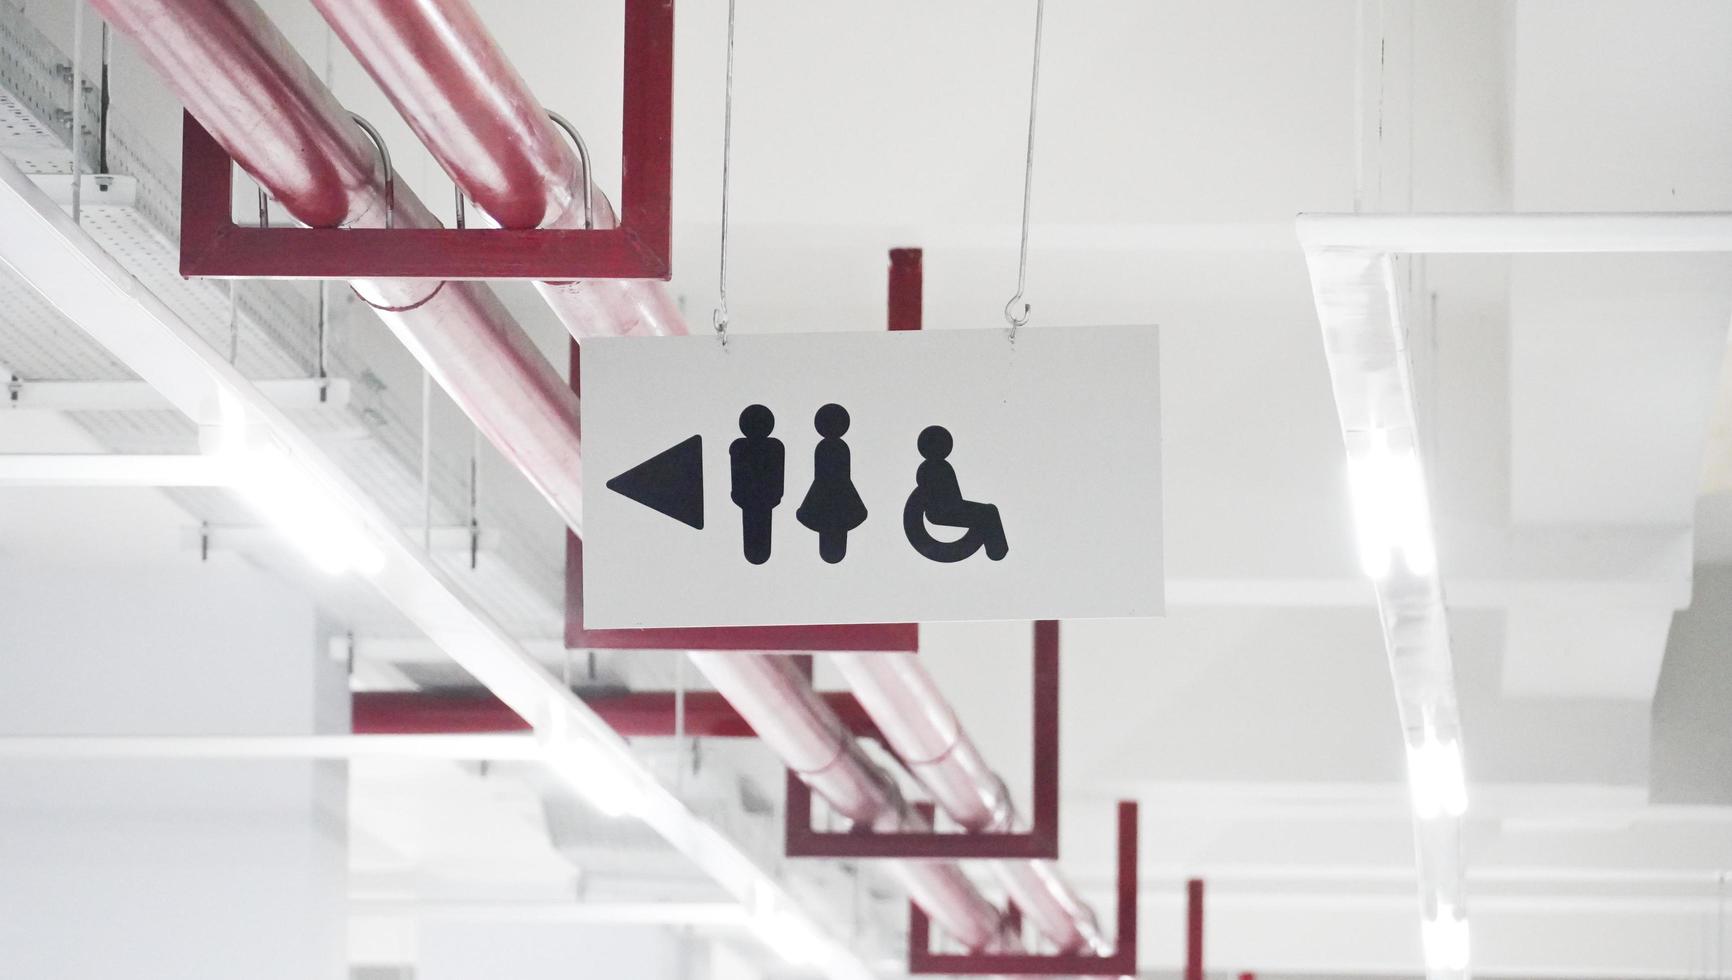 op het dak van het station hing een richtingaanwijzer met daarop het toilet voor de bezoekers. er zijn symbolen van mannen, vrouwen en een persoon in een rolstoel. foto